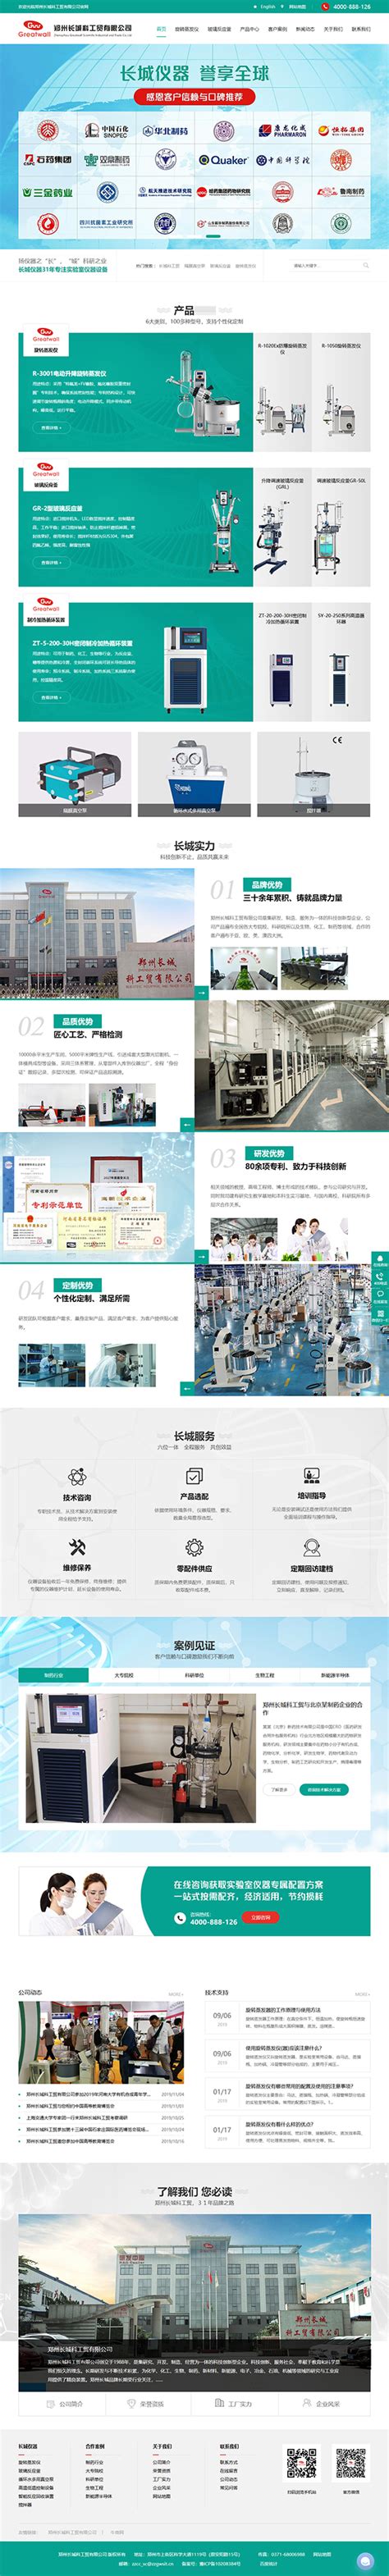 企业营销型网站建设的几大特征-泥鳅SEO(张弘宇)博客,烟台SEO,互联网思维学习倡导者